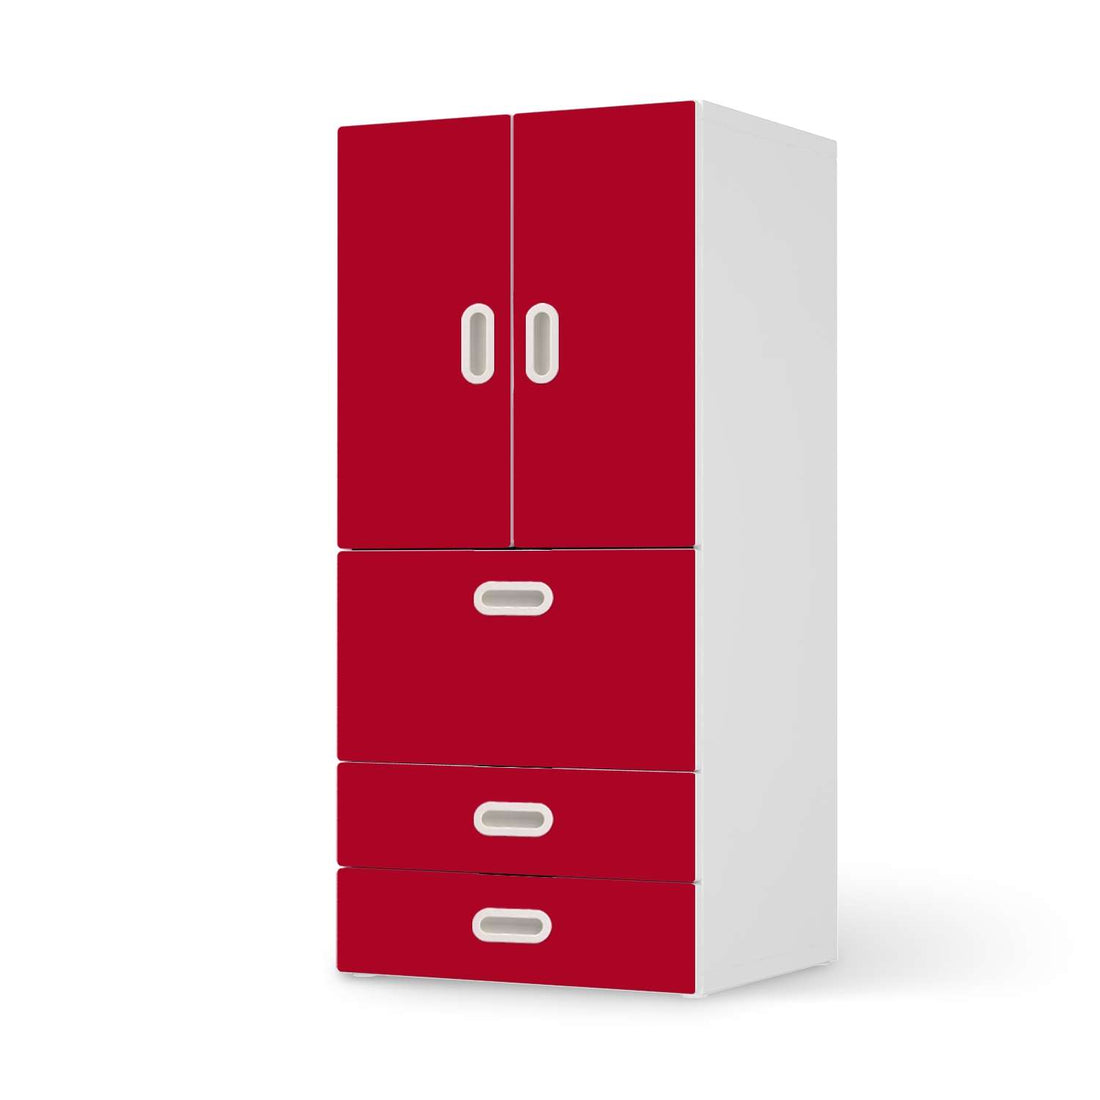 Möbelfolie Rot Dark - IKEA Stuva / Fritids kombiniert - 3 Schubladen und 2 kleine Türen  - weiss